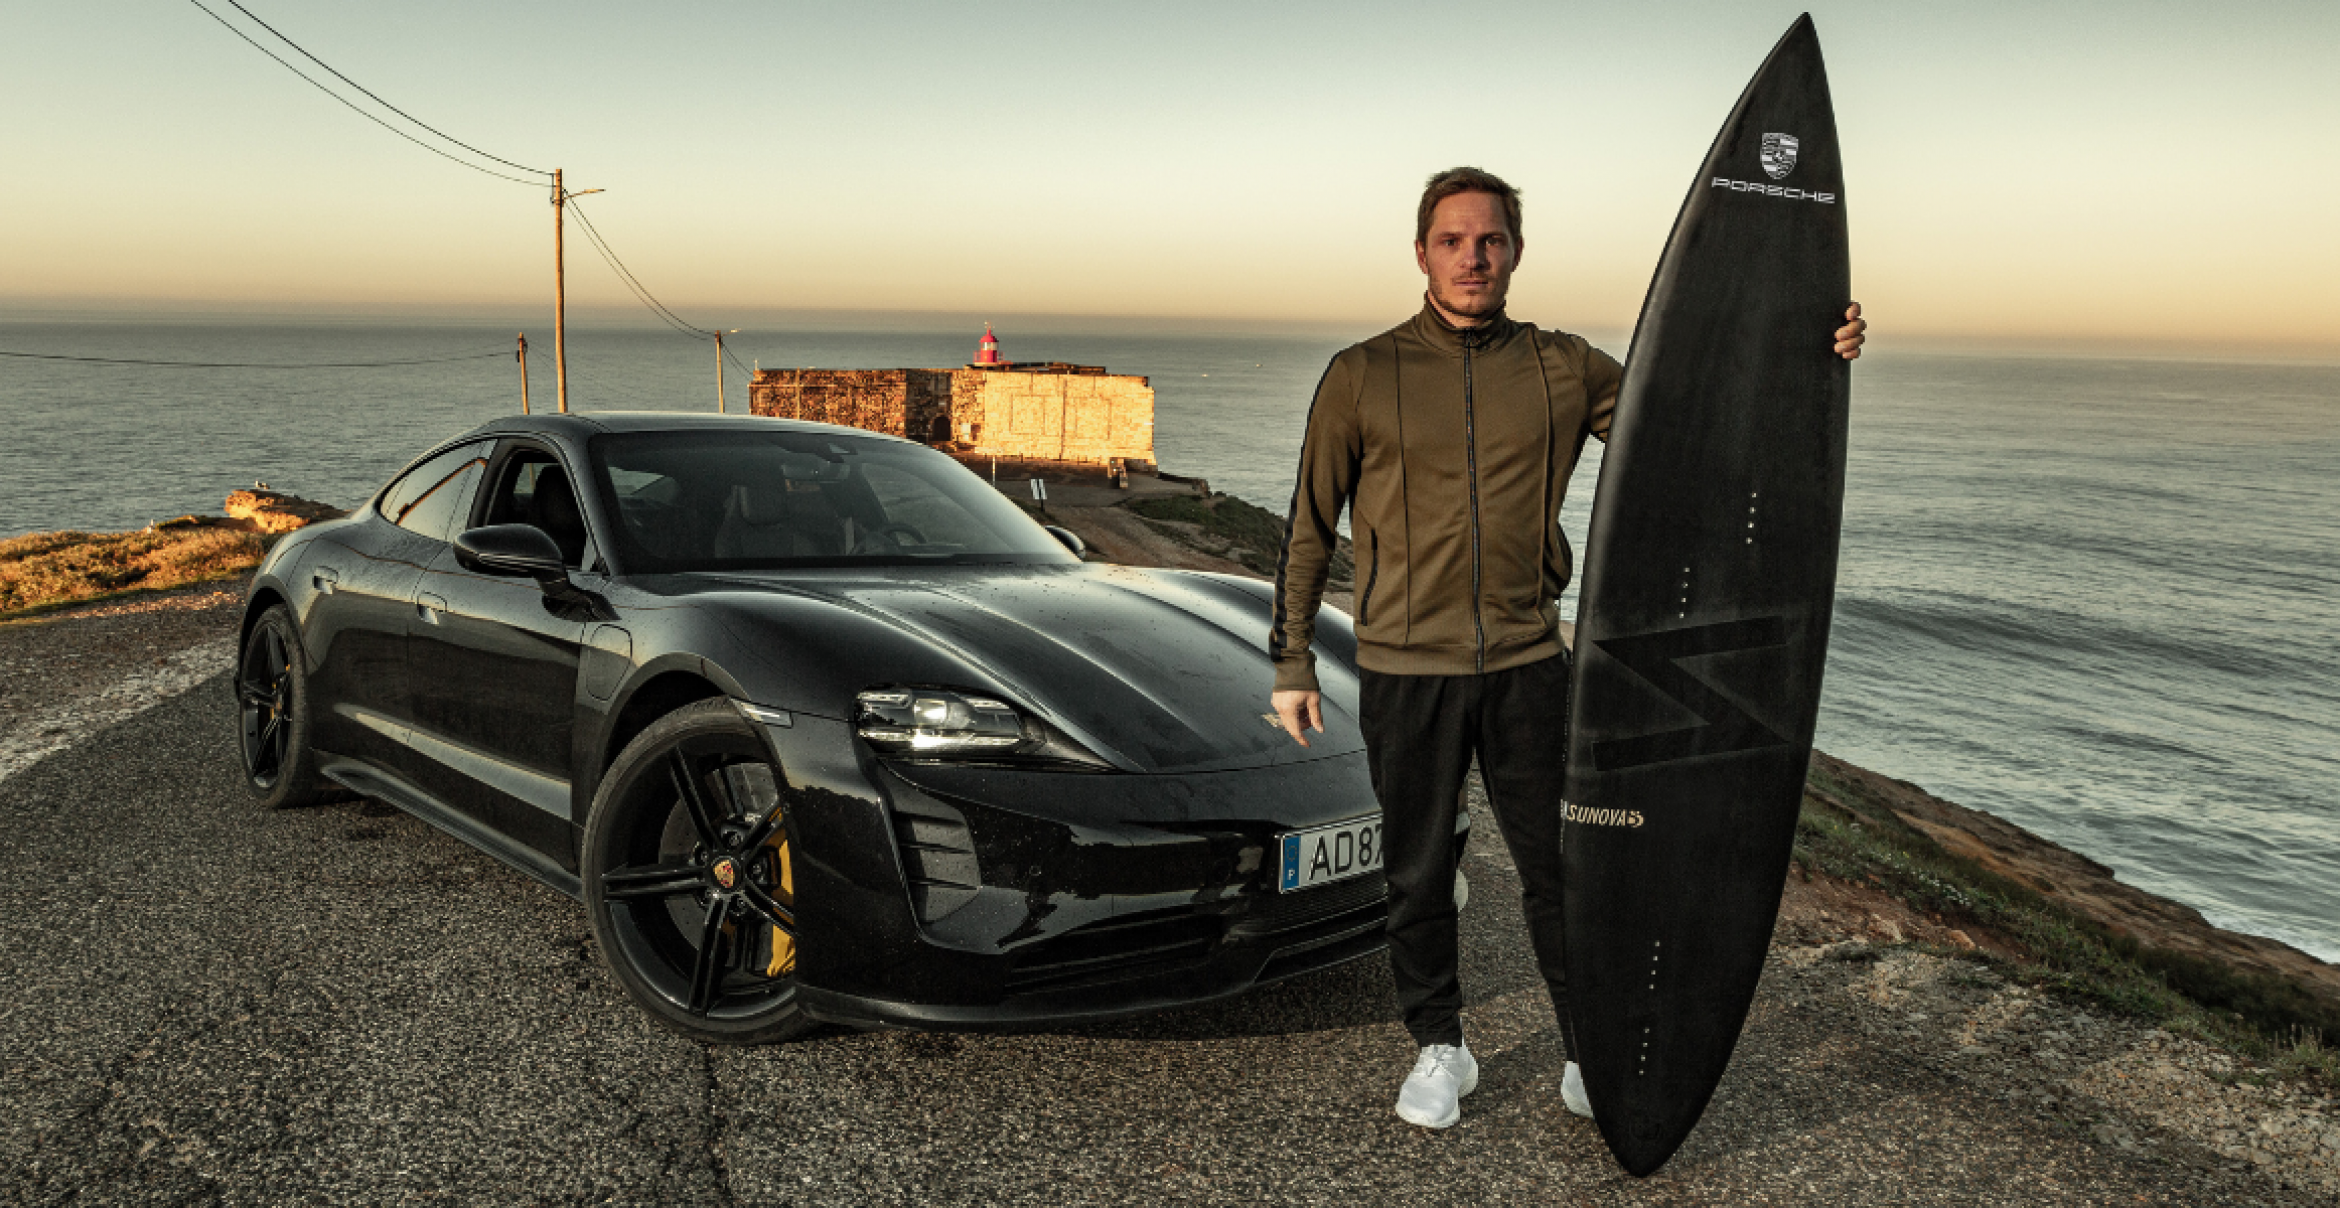 Wie Porsche mit einem Big-Wave-Meister ins Surfgeschäft expandiert